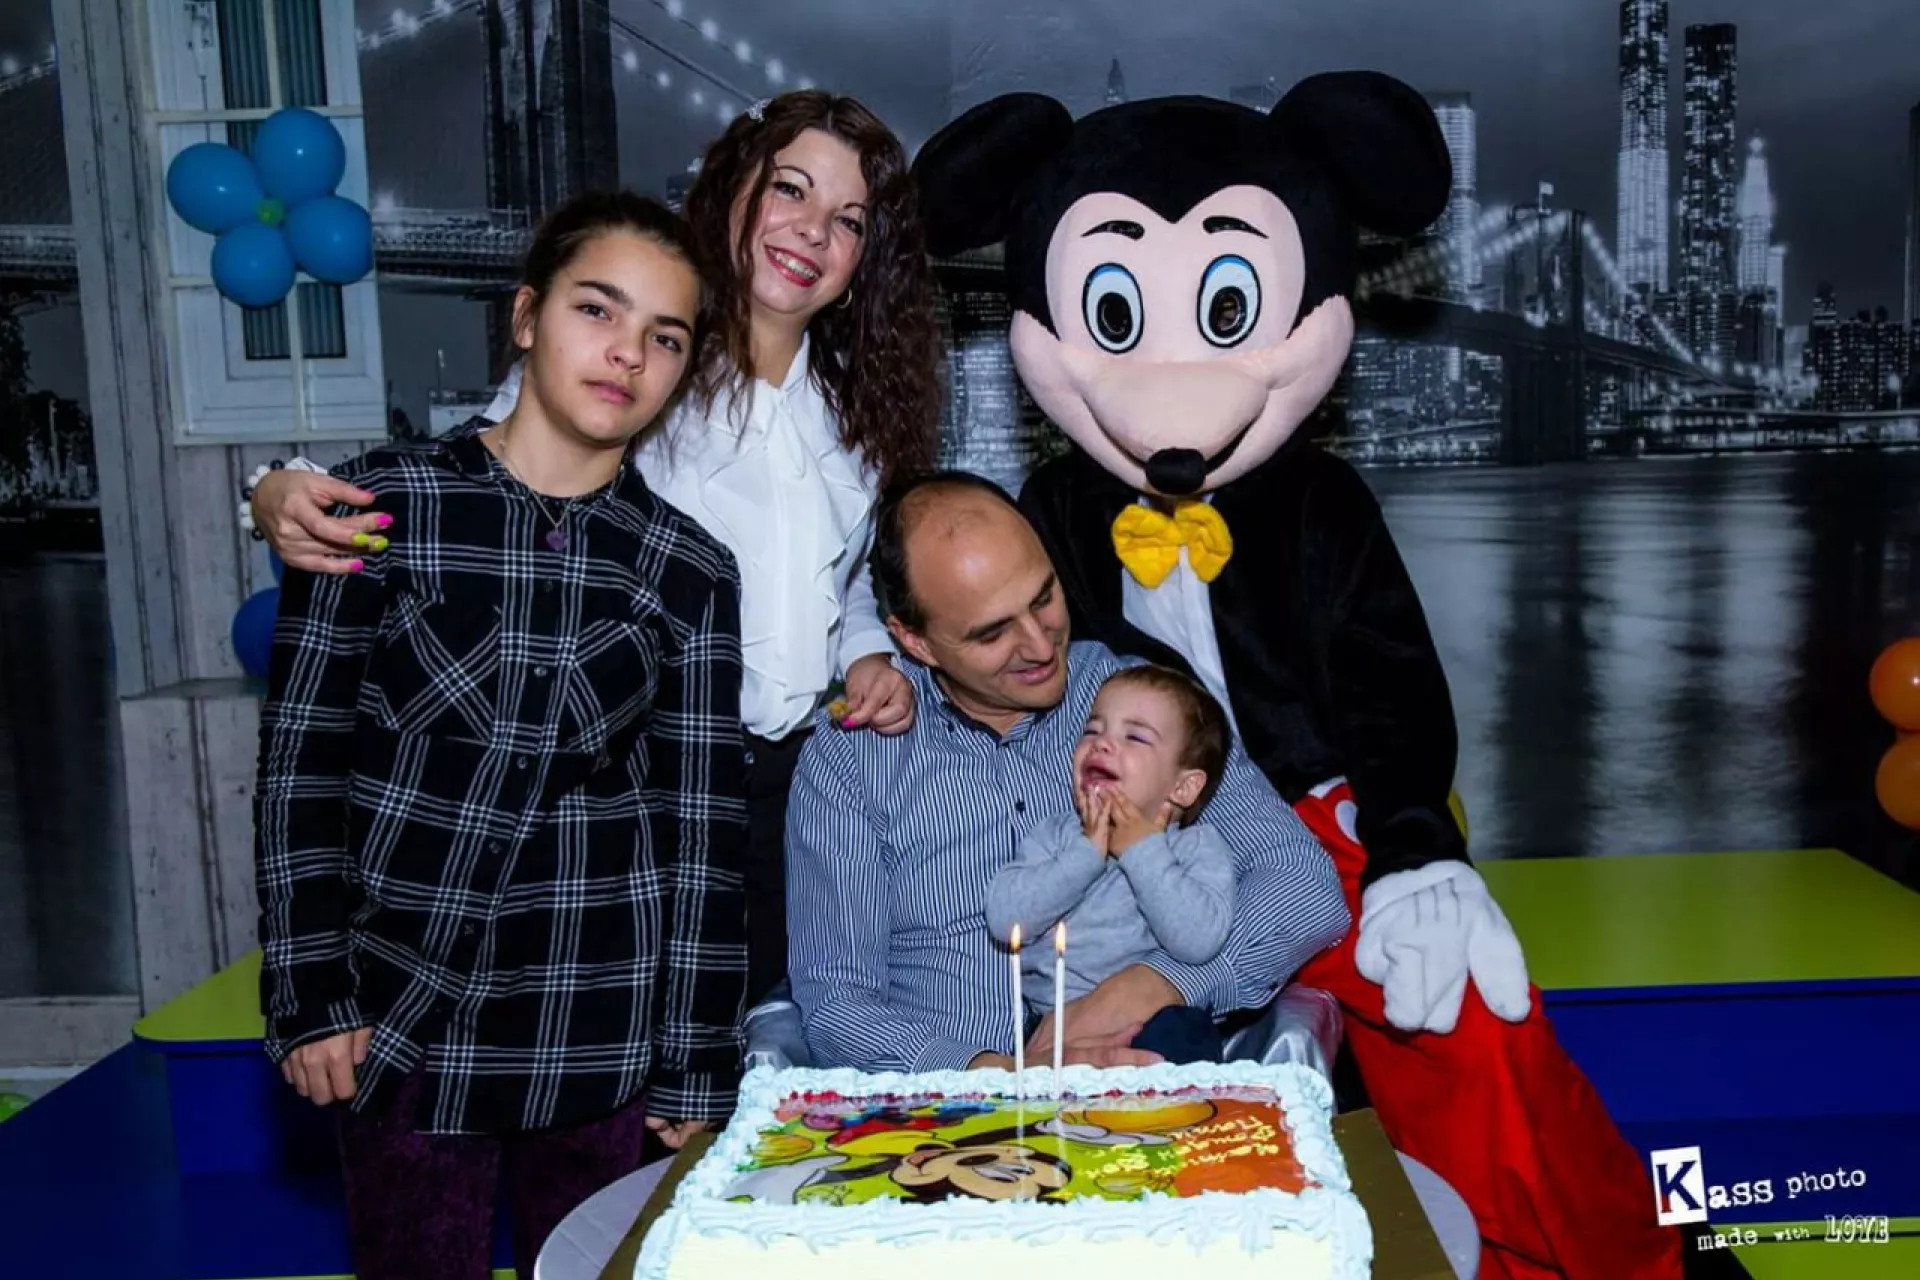 Павчо празнува своя рожден ден заедно със семейството си - мама, татко и кака